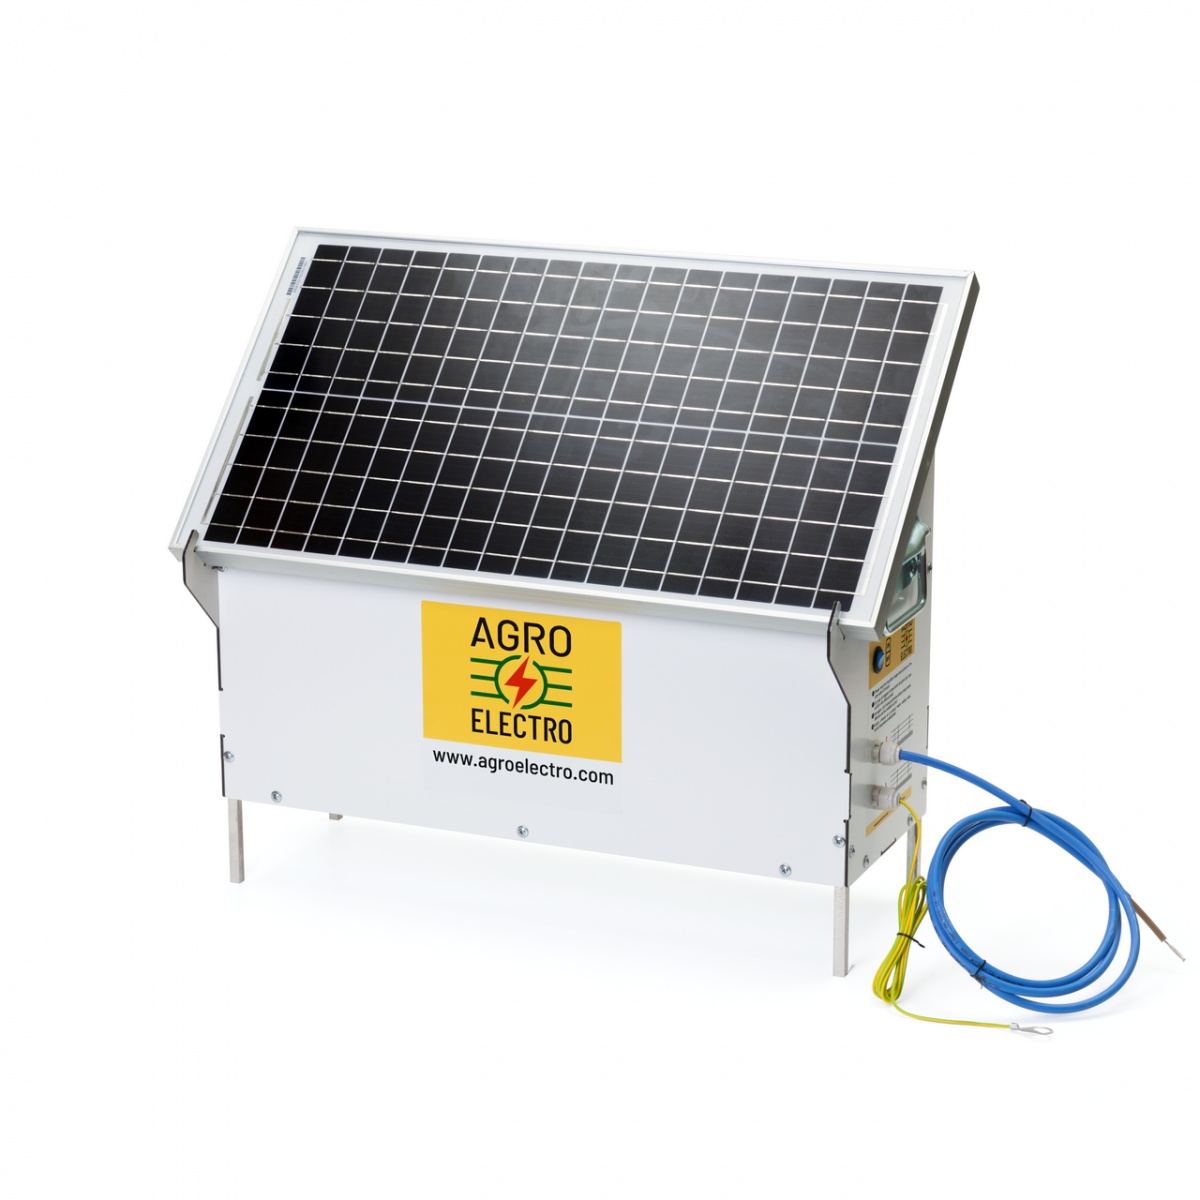 DL 4500 ECO-compact villanypásztor készülék, 30 W-os napelemes rendszerrel